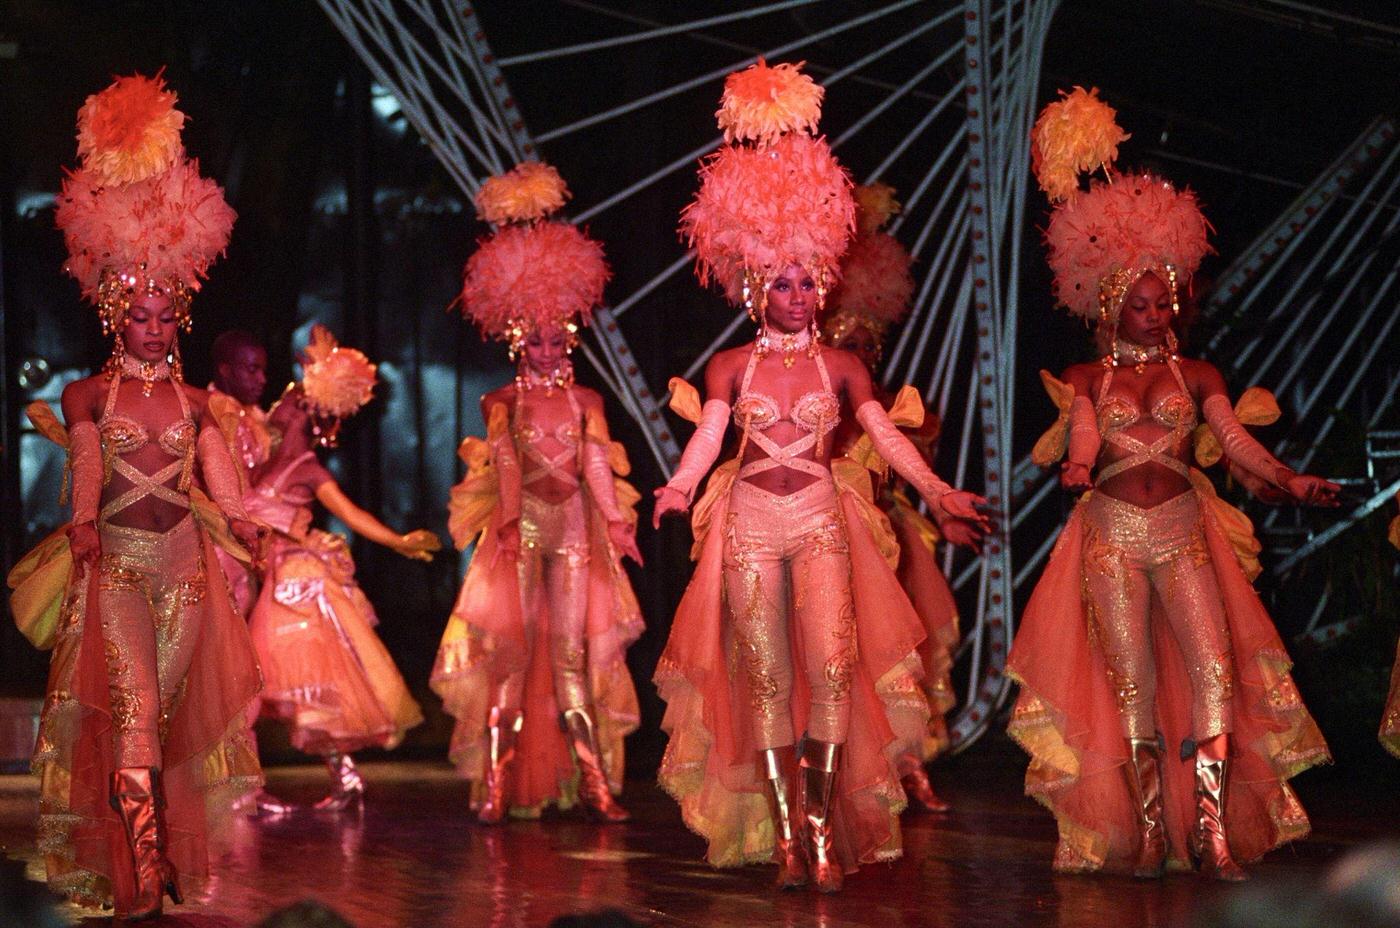 Tänzer, Revue-Theater, and Nightclub "Tropicana" in Havana, Cuba.